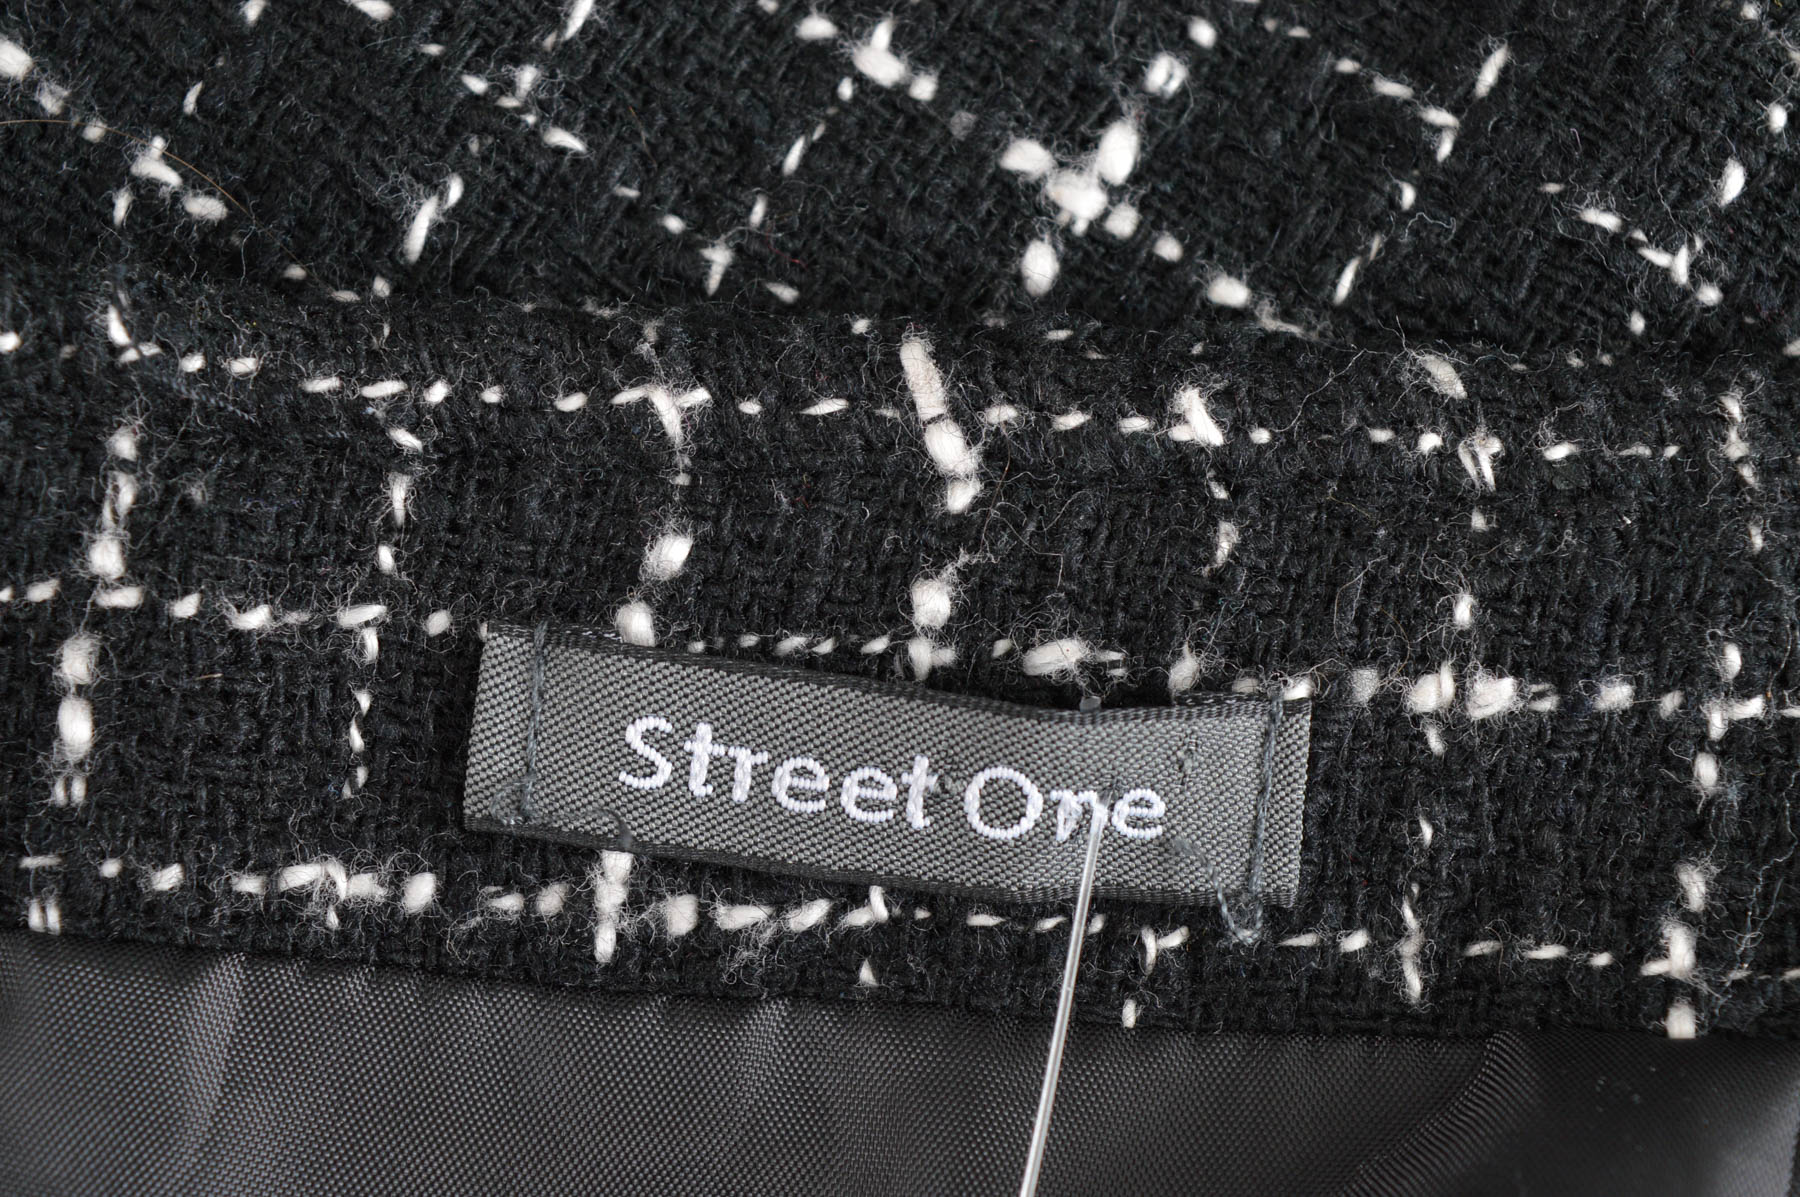 Skirt - Street One - 2